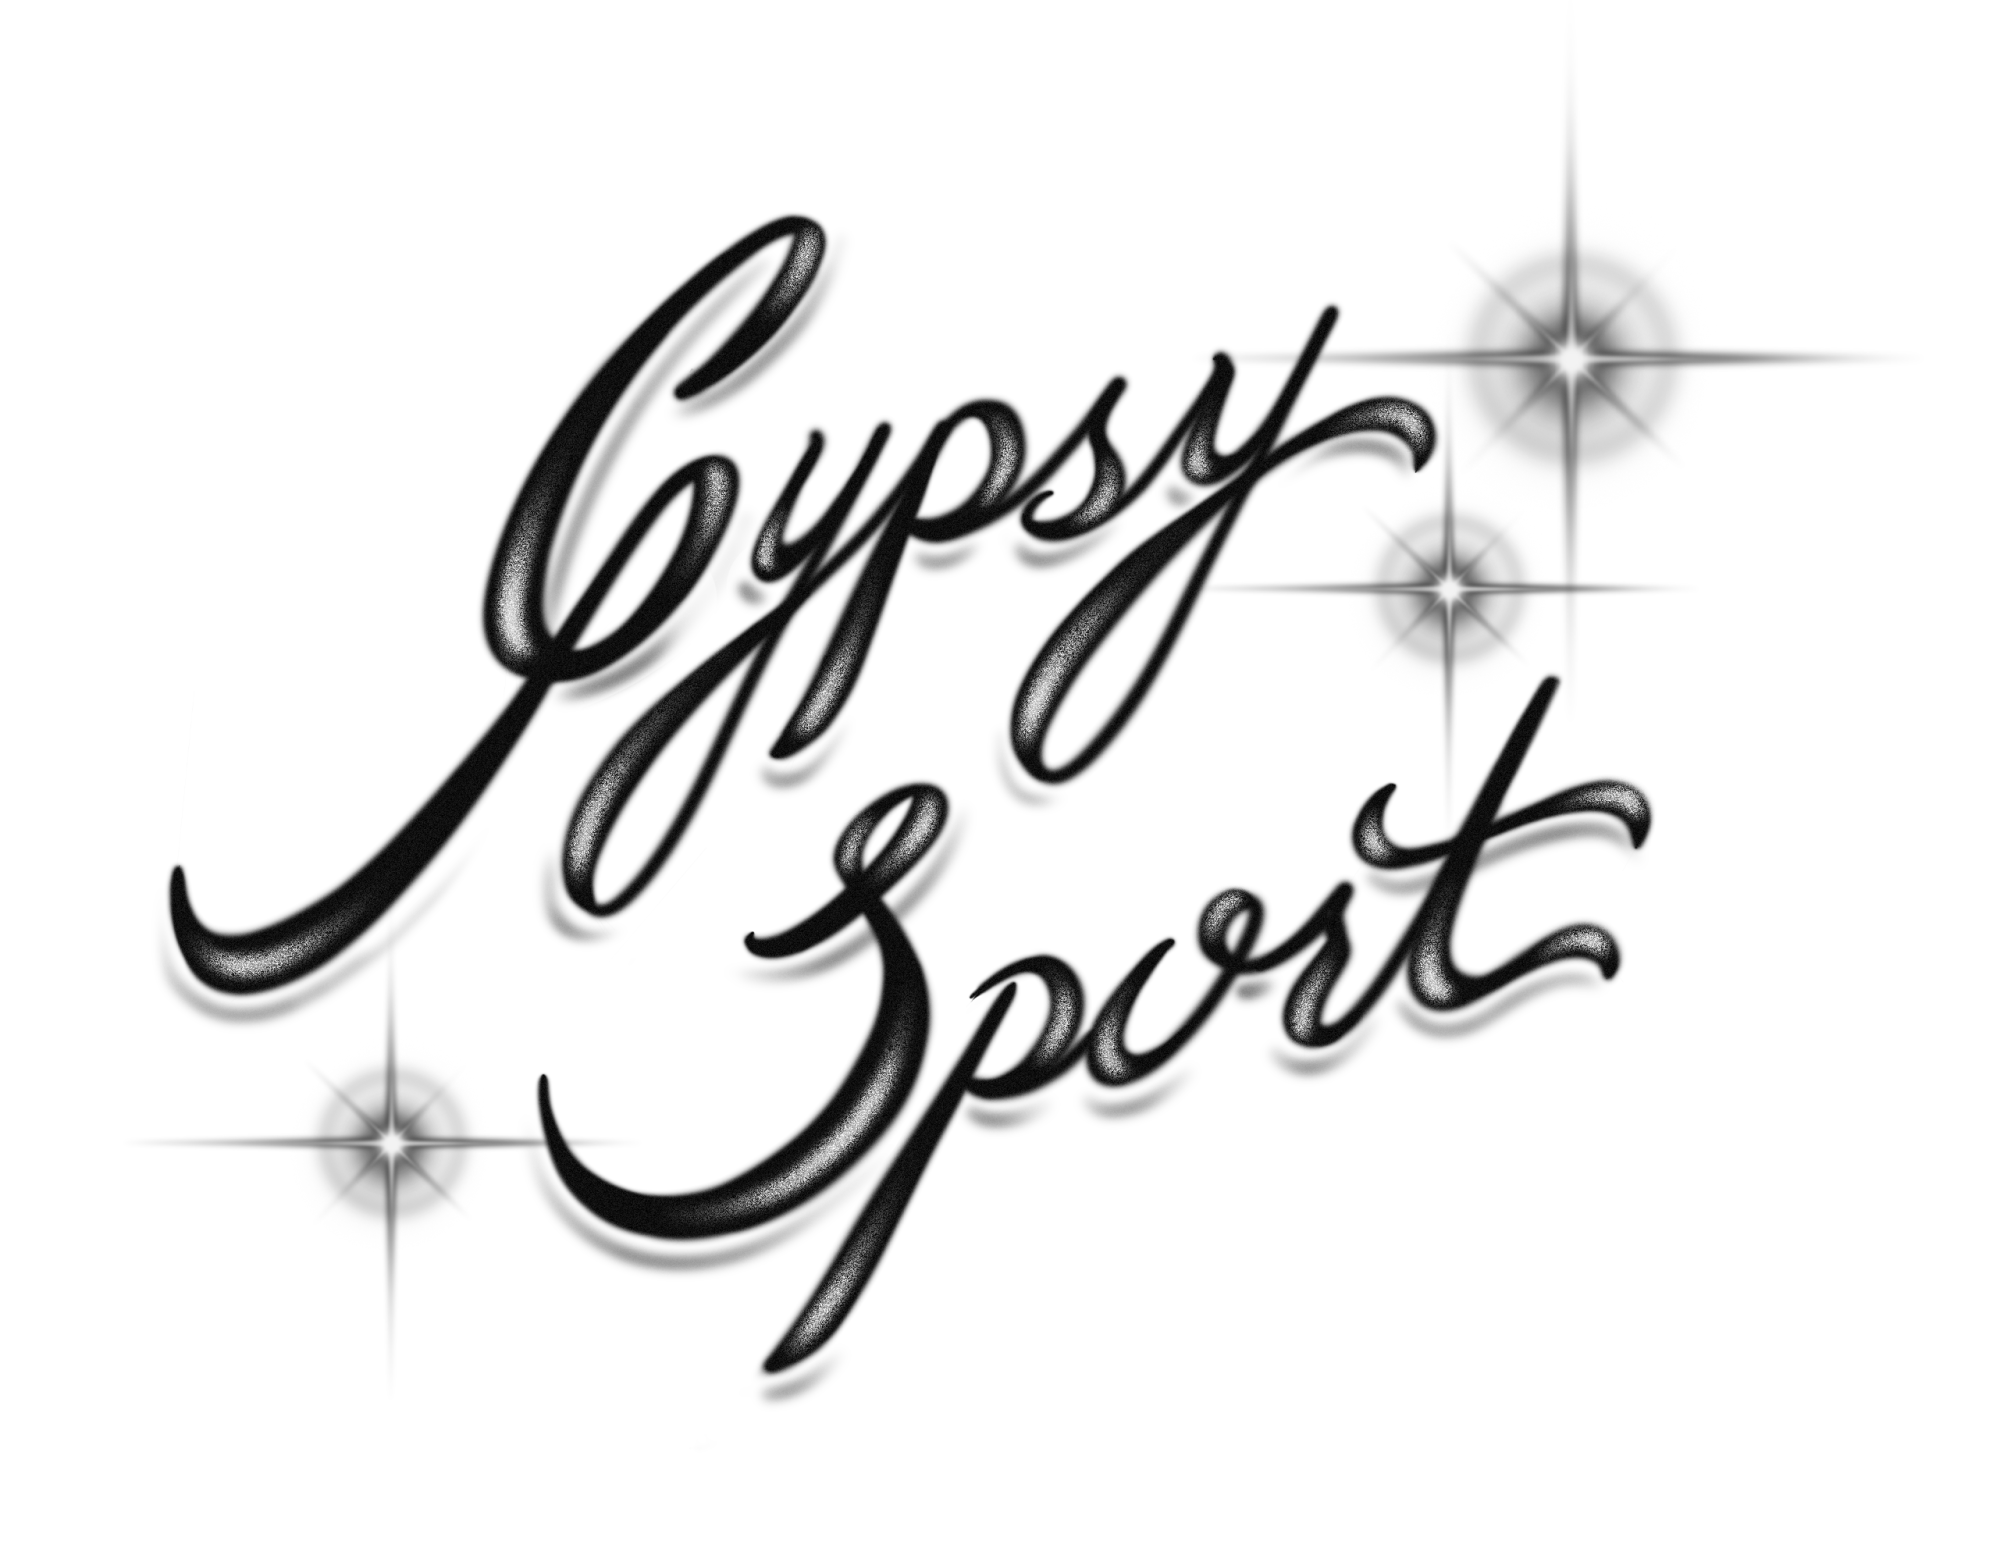 script that reads “Gypsy Sport”